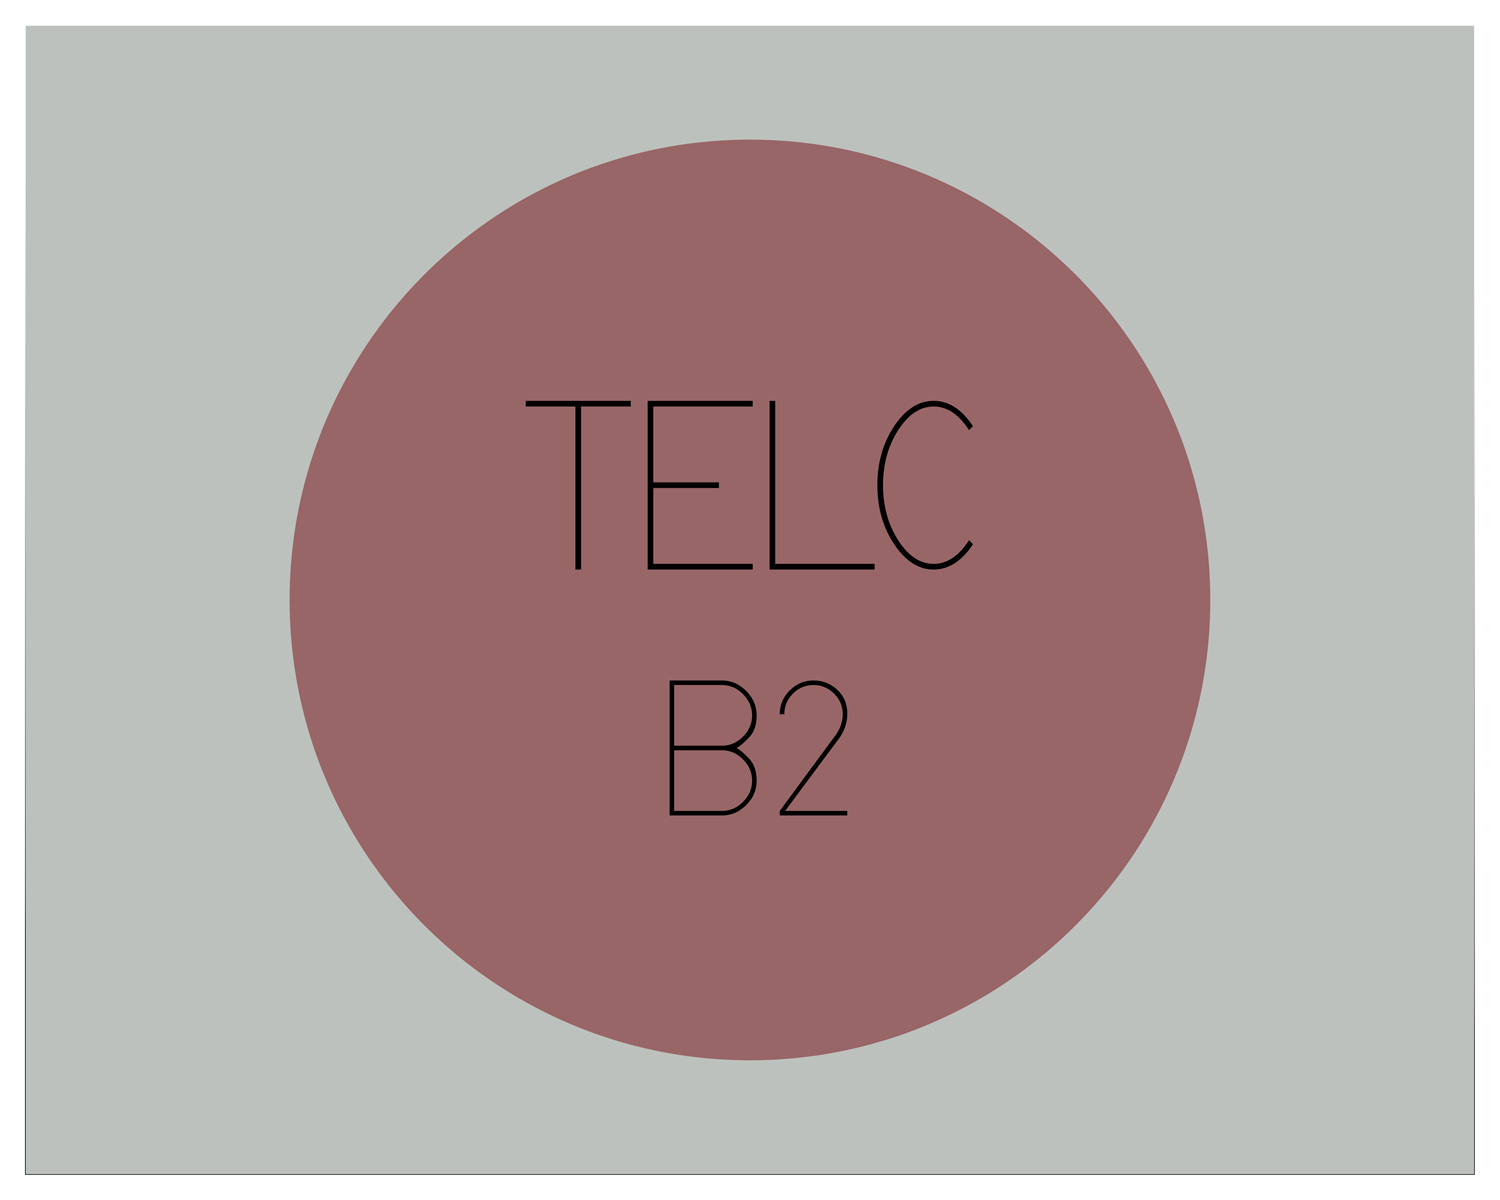 telc_B2_s